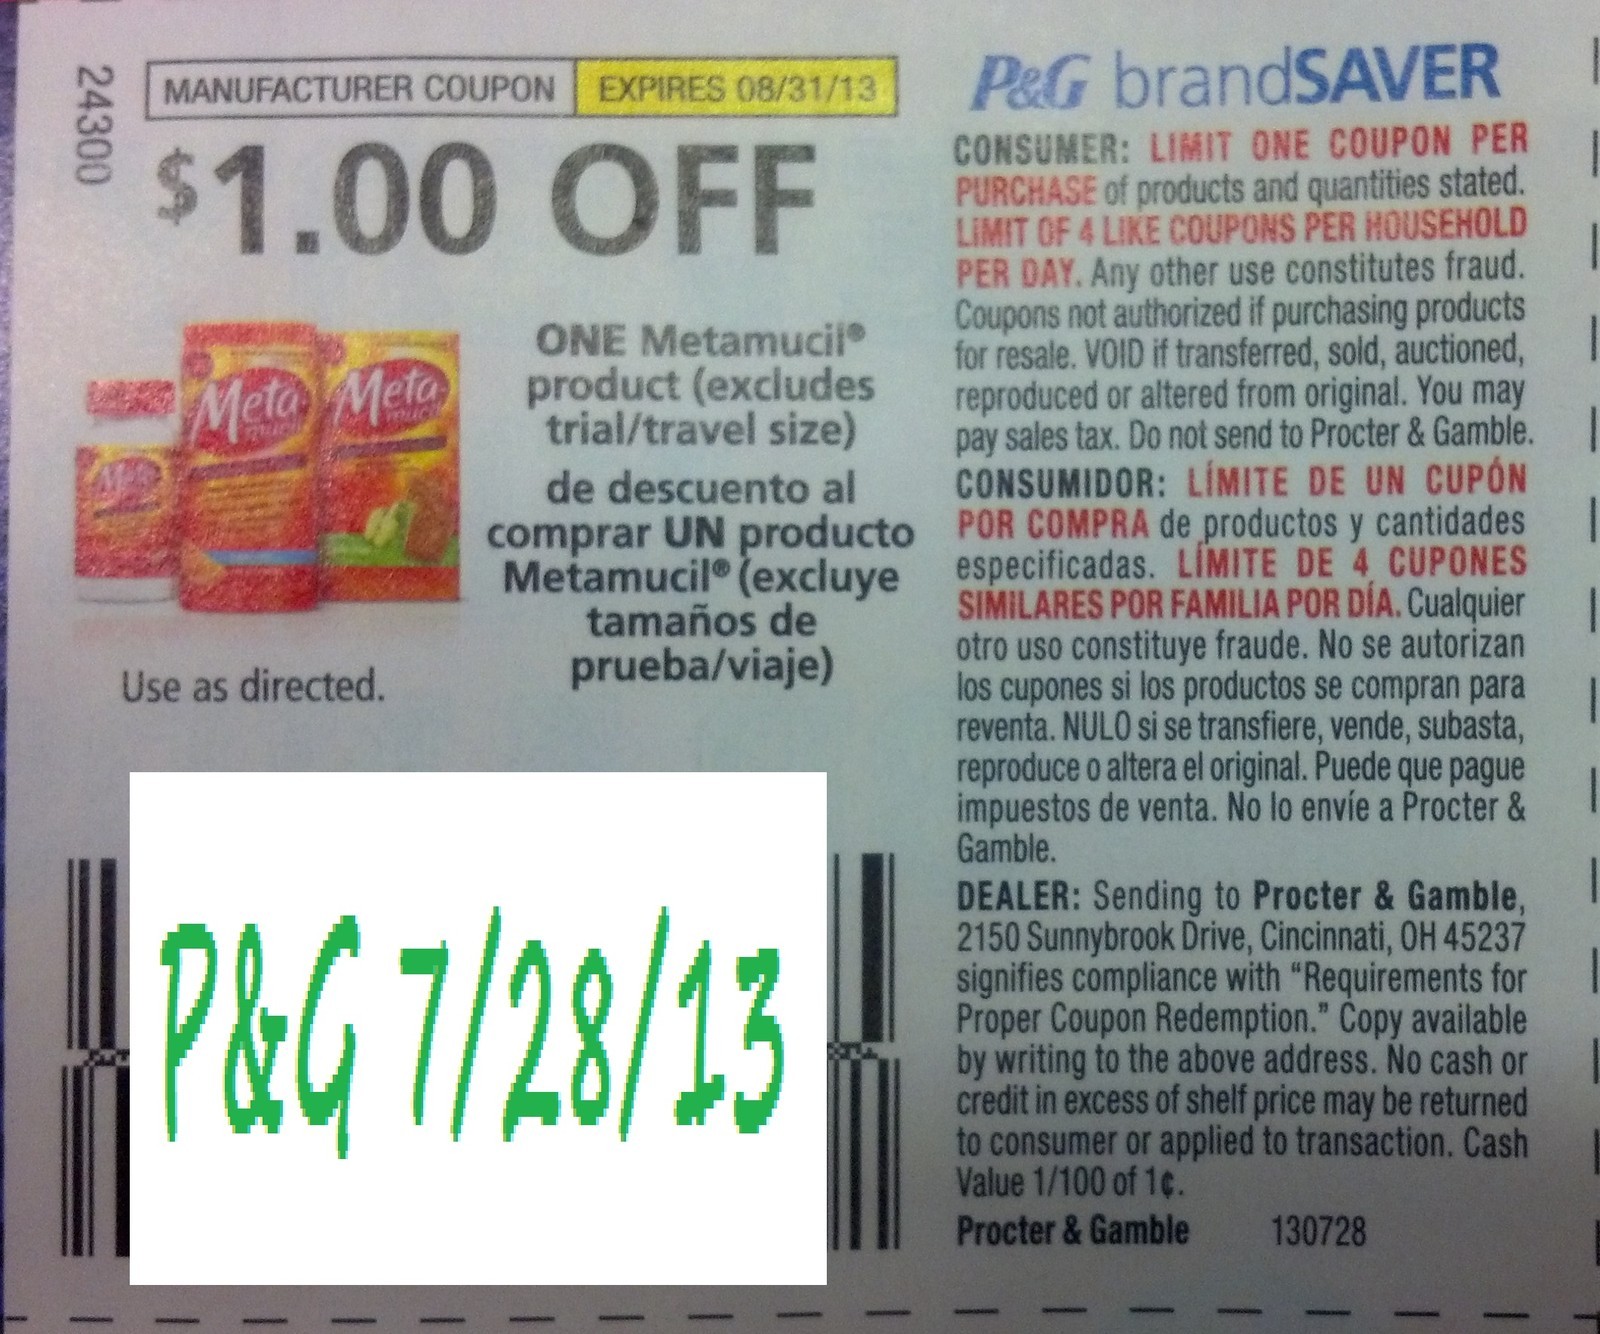 $1.00 off one Metamucil product Expires 08-31-2013